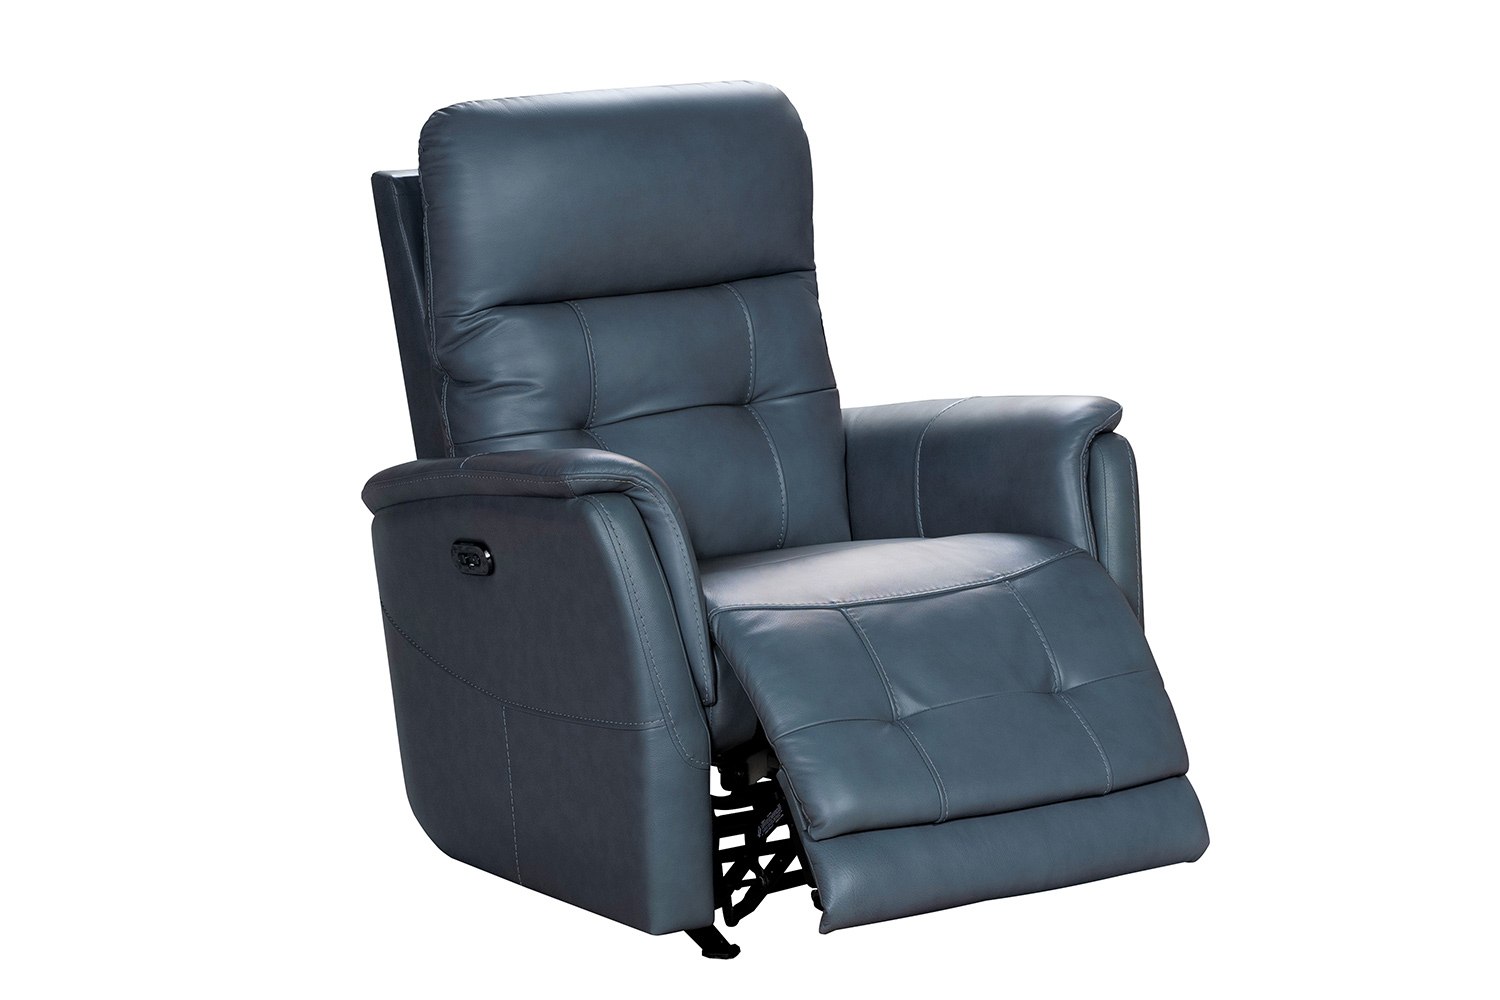 Barcalounger Horton Power Rocker Recliner Chair with Power Head Rest - Masen Bluegray/Leather match